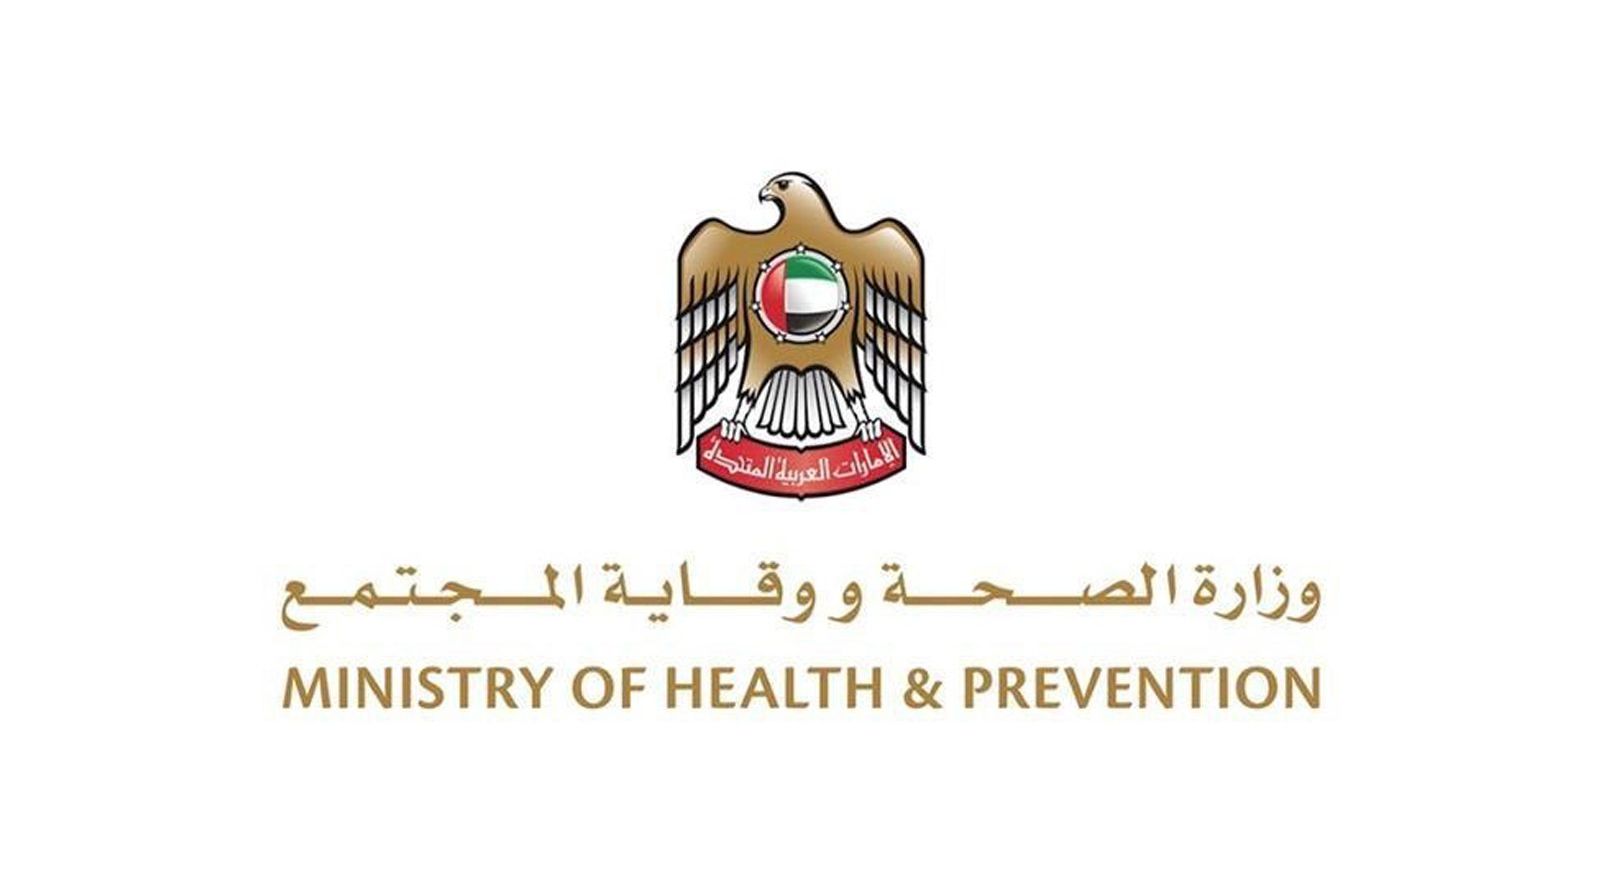 وزارت صحت نے تمام کوویڈ19 مراکز صرف بوڑھوں اور دائمی بیماریوں والے افراد کے لئے وقف کر دئیے